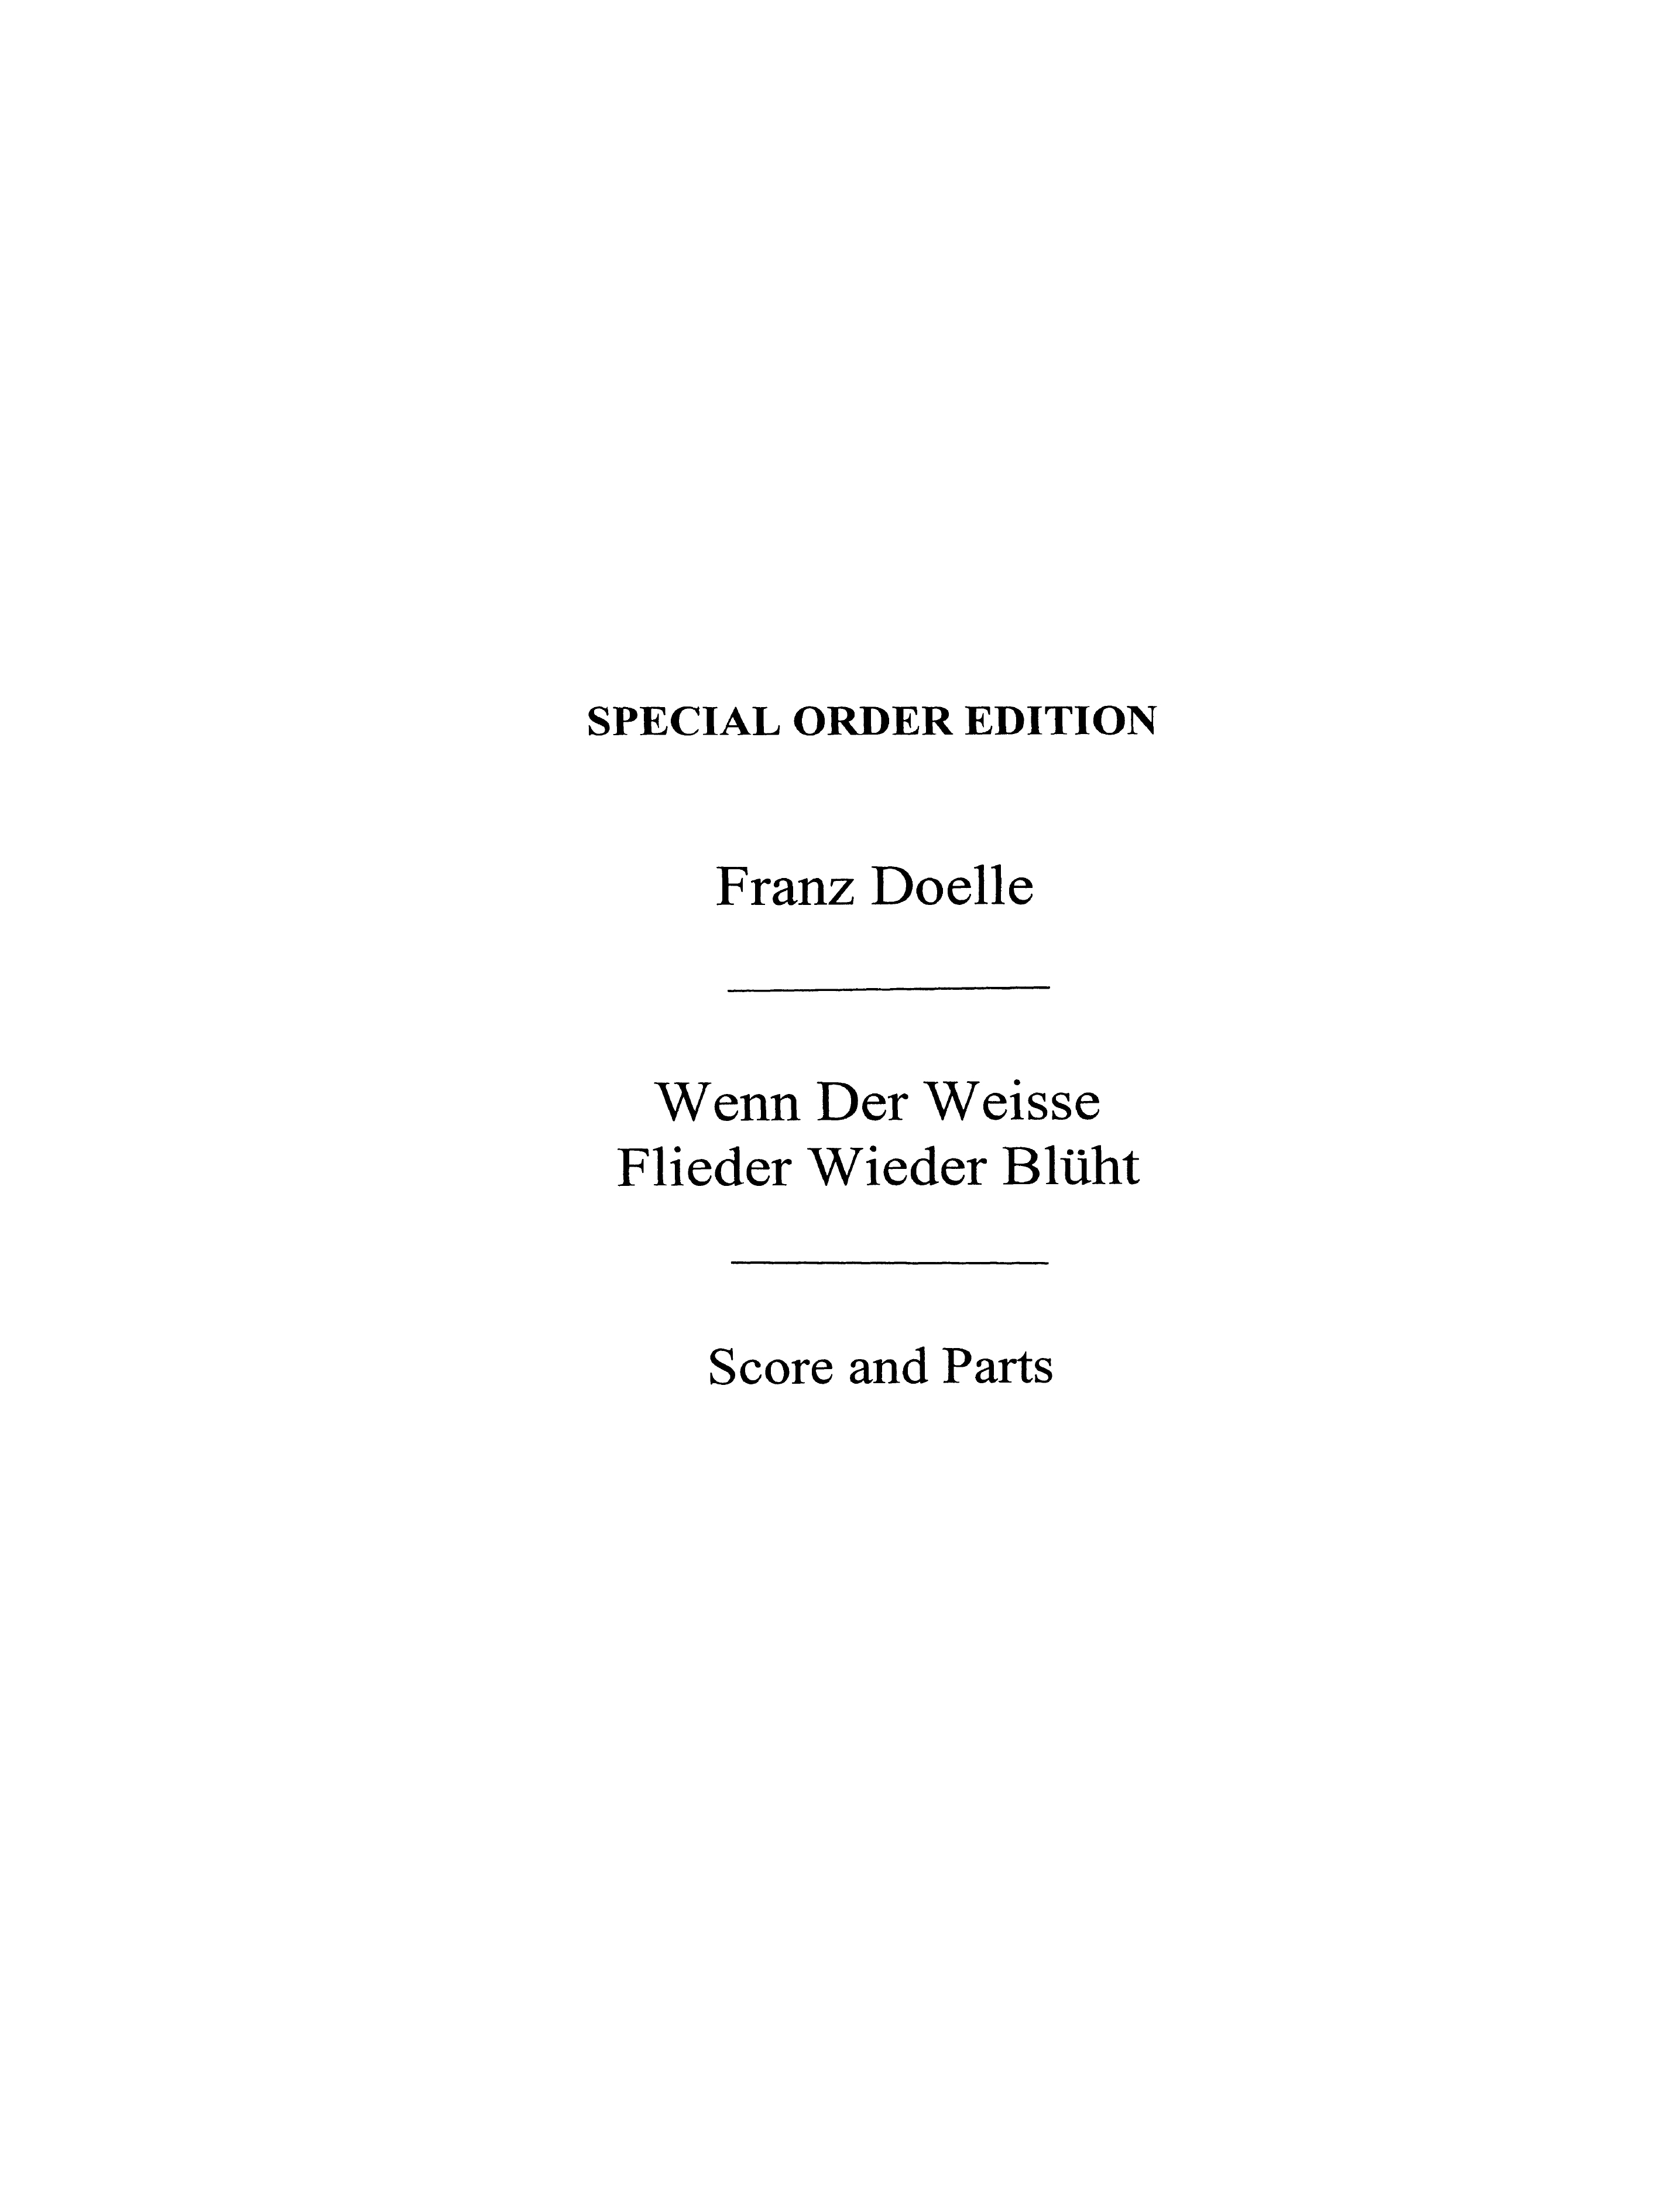 Franz Doelle: Franz Doelle: Wenn Der Weisse Flieder Wieder Bluht: Orchestra: